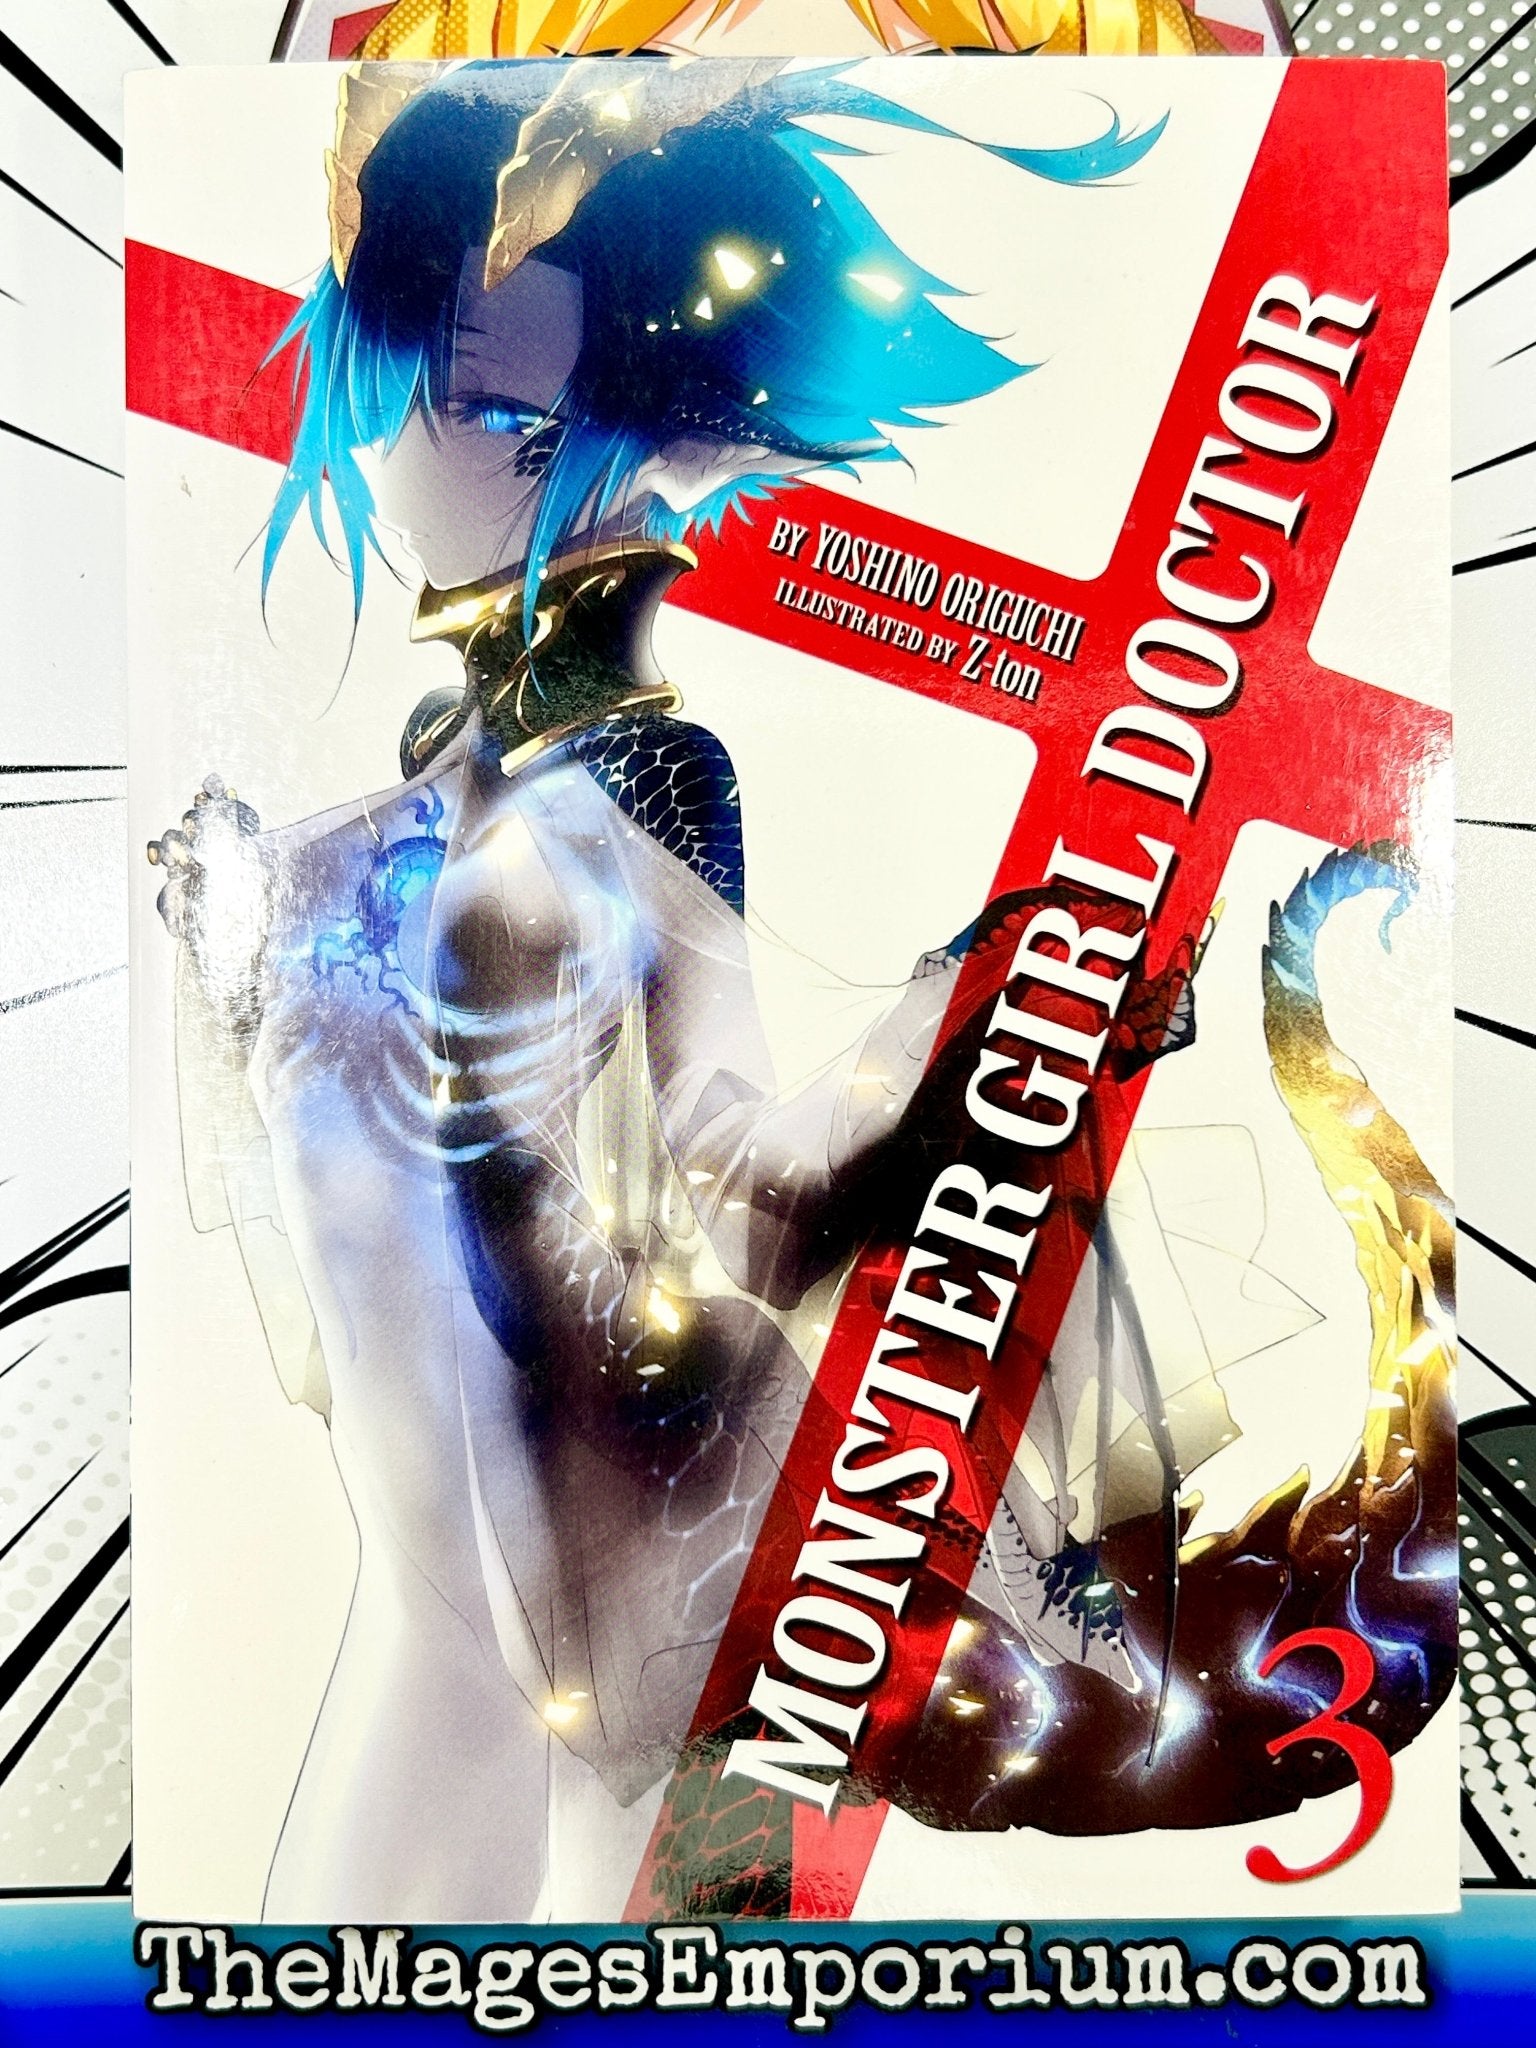 Yoshino Origuchi's Medical Fantasy Light Novel Monster Girl Doctor